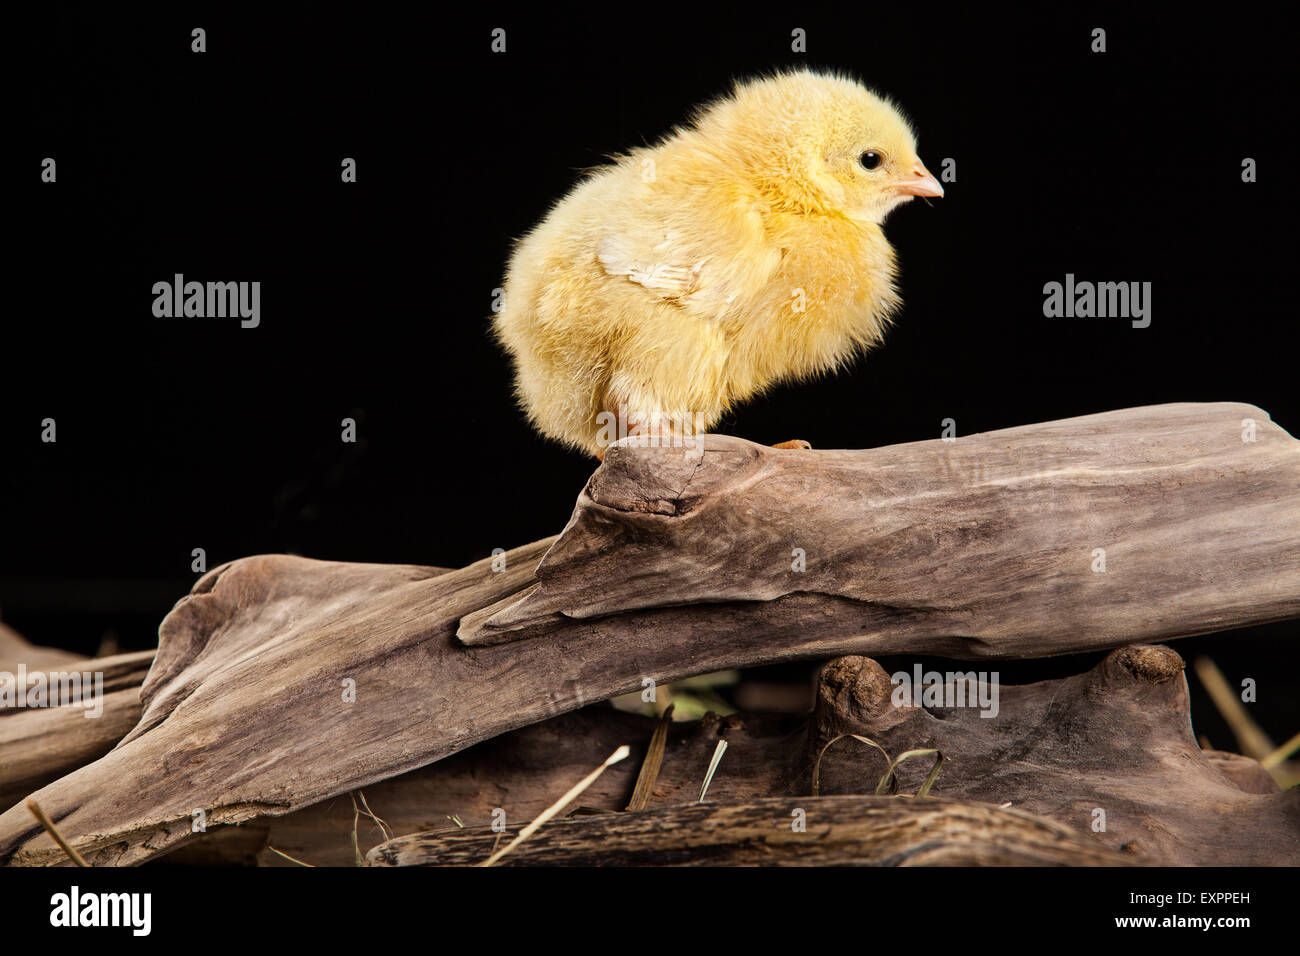 Animaux oiseaux volailles poulet isolés des animaux domestiques oiseaux animaux bébé sur shot mignon petit studio jeune domestique fond couleur Banque D'Images